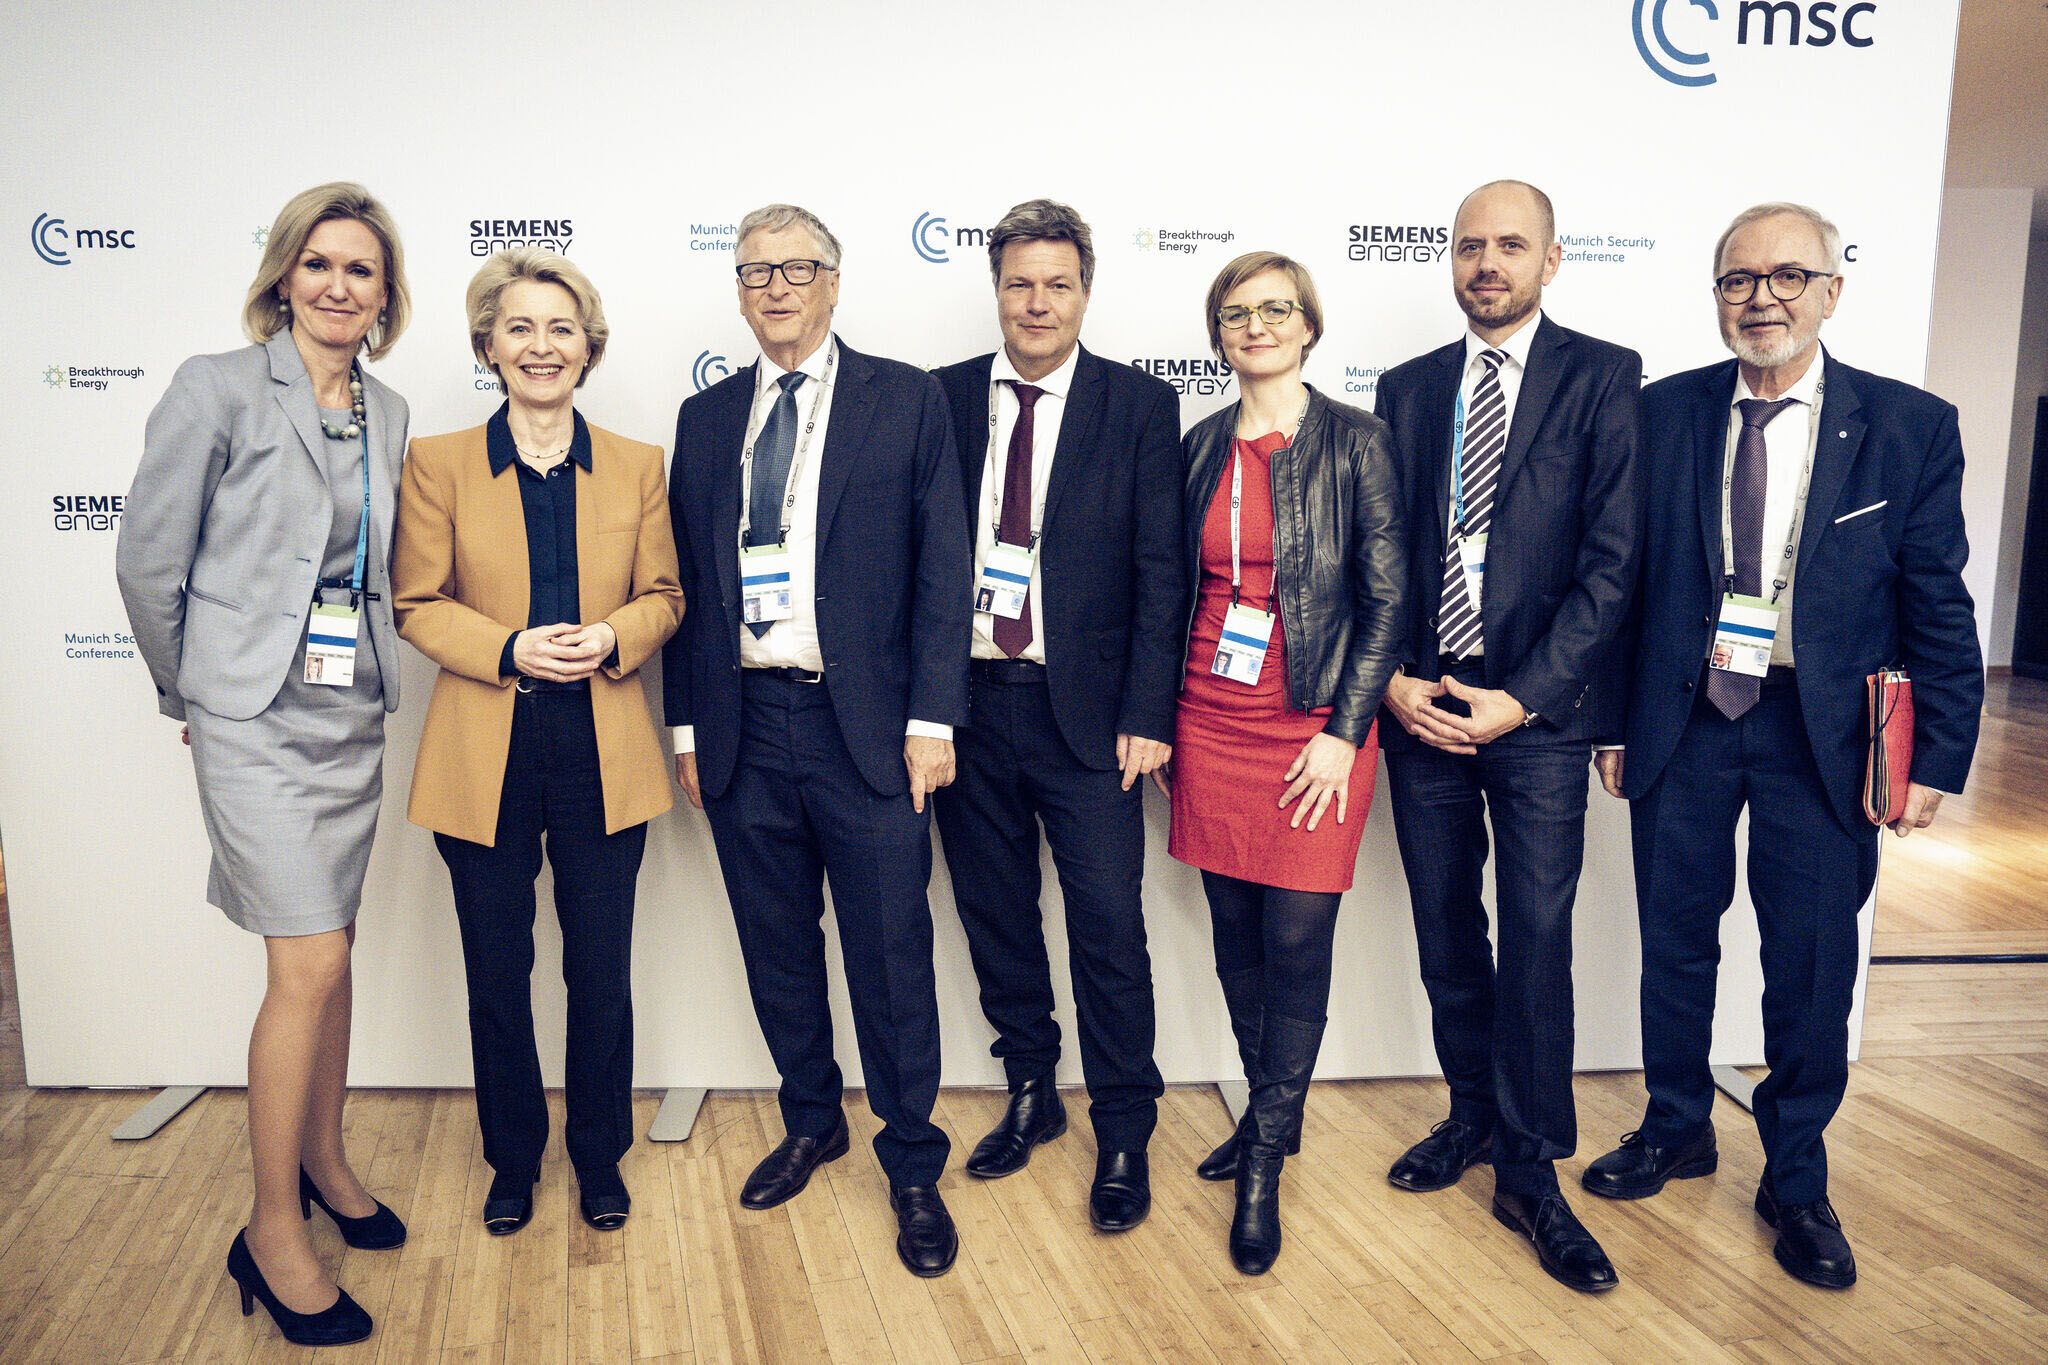 Group image with Ann Mettler, Ursula von der Leyen, Bill Gates, Robert Habeck, Franziska Brantner, Christian Bruch, Werner Hoyer